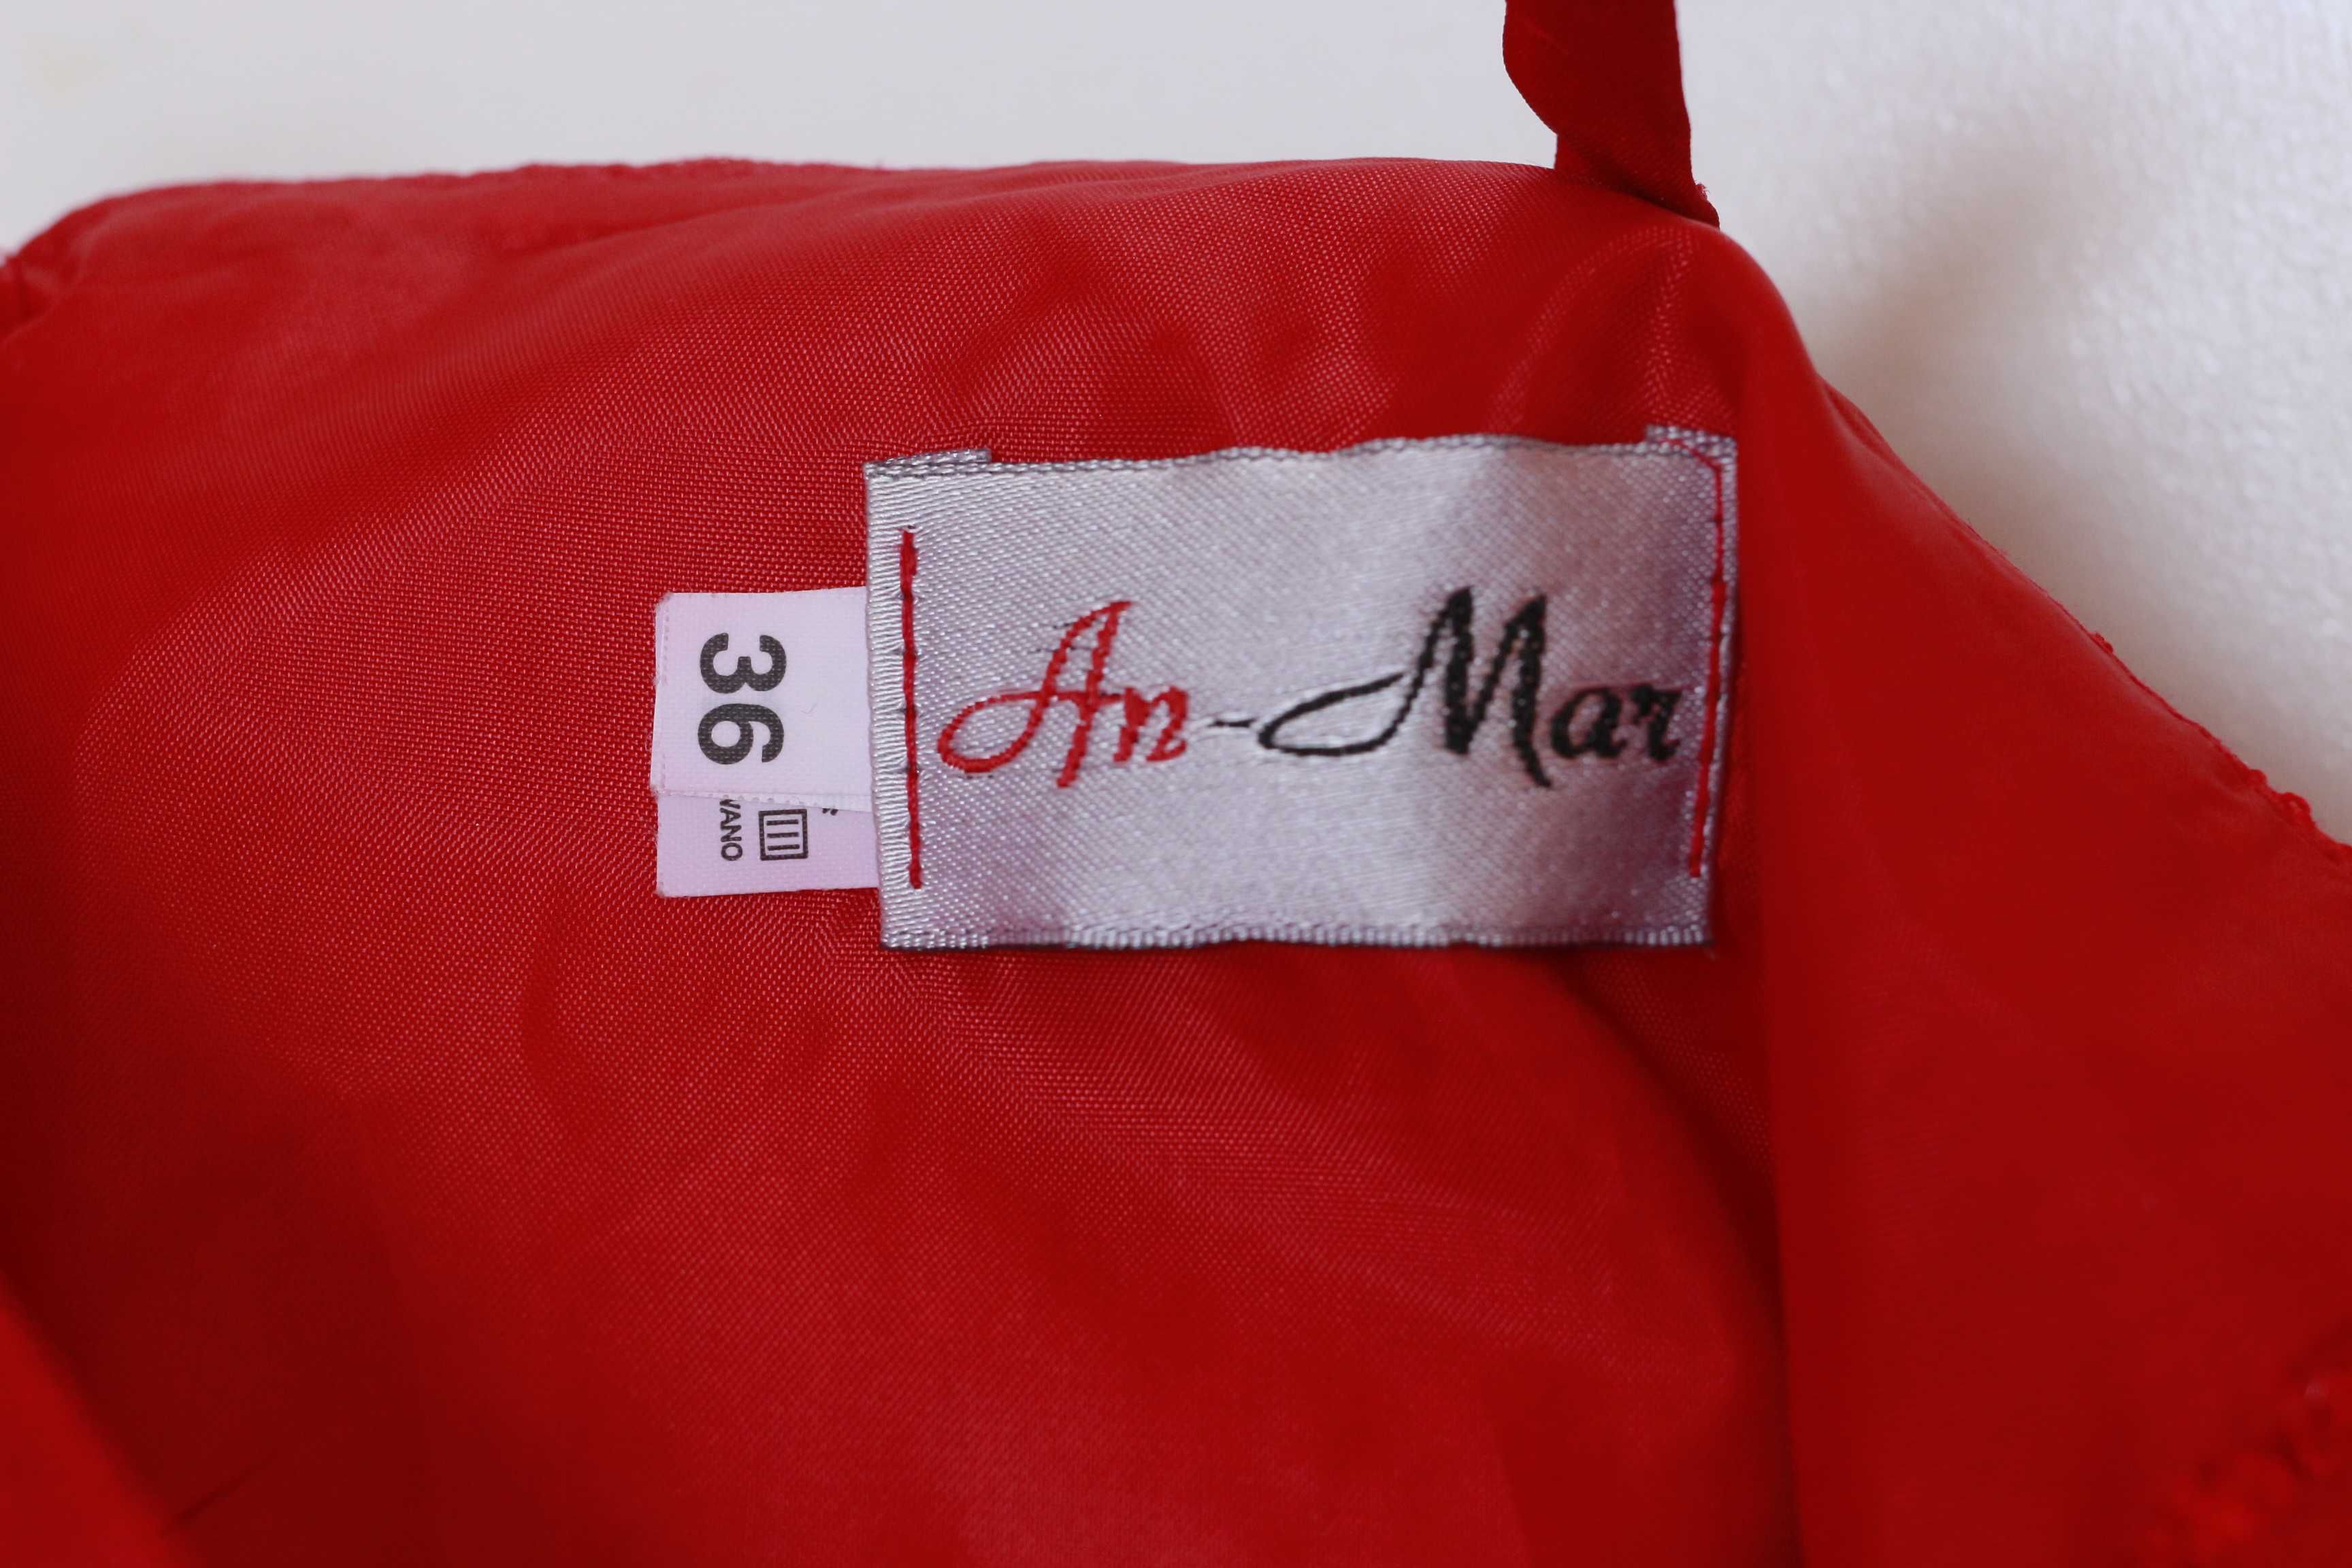 Sukienka czerwona An-Mar M 36 red suknia